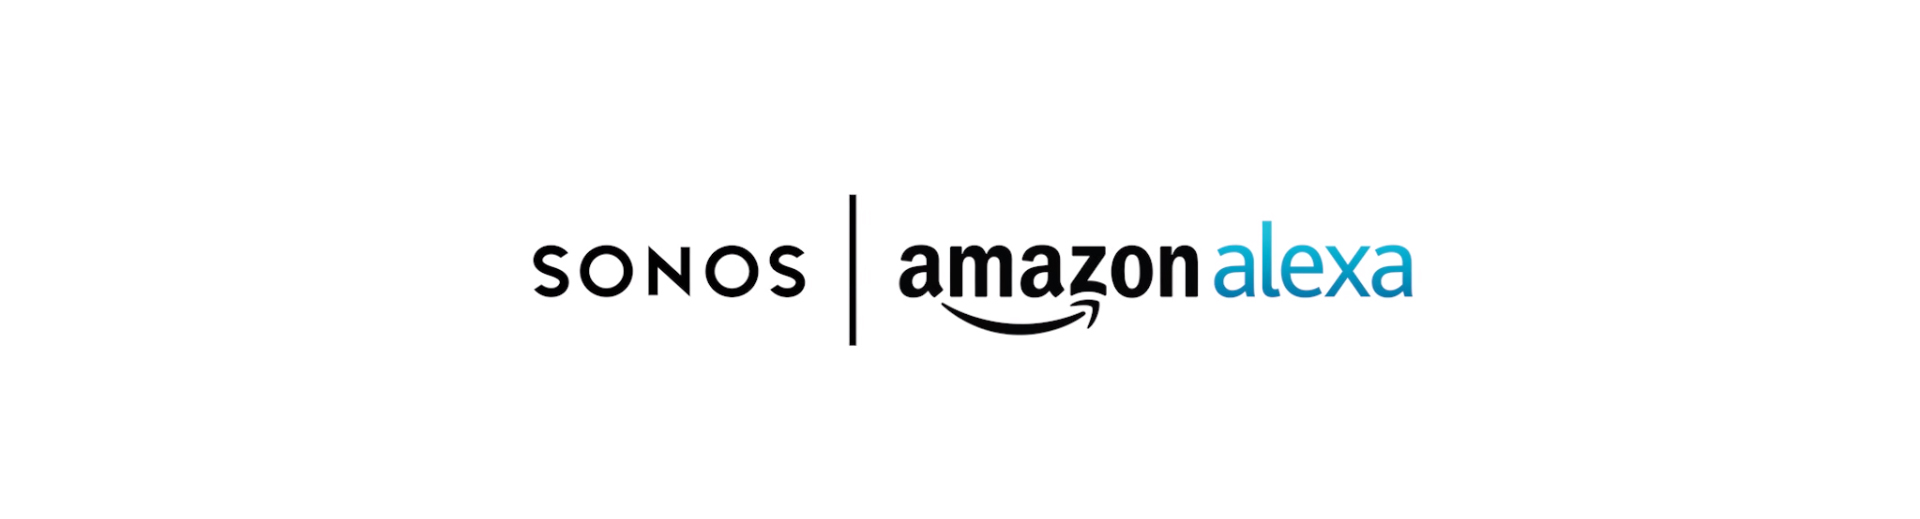 Sonos en Amazon